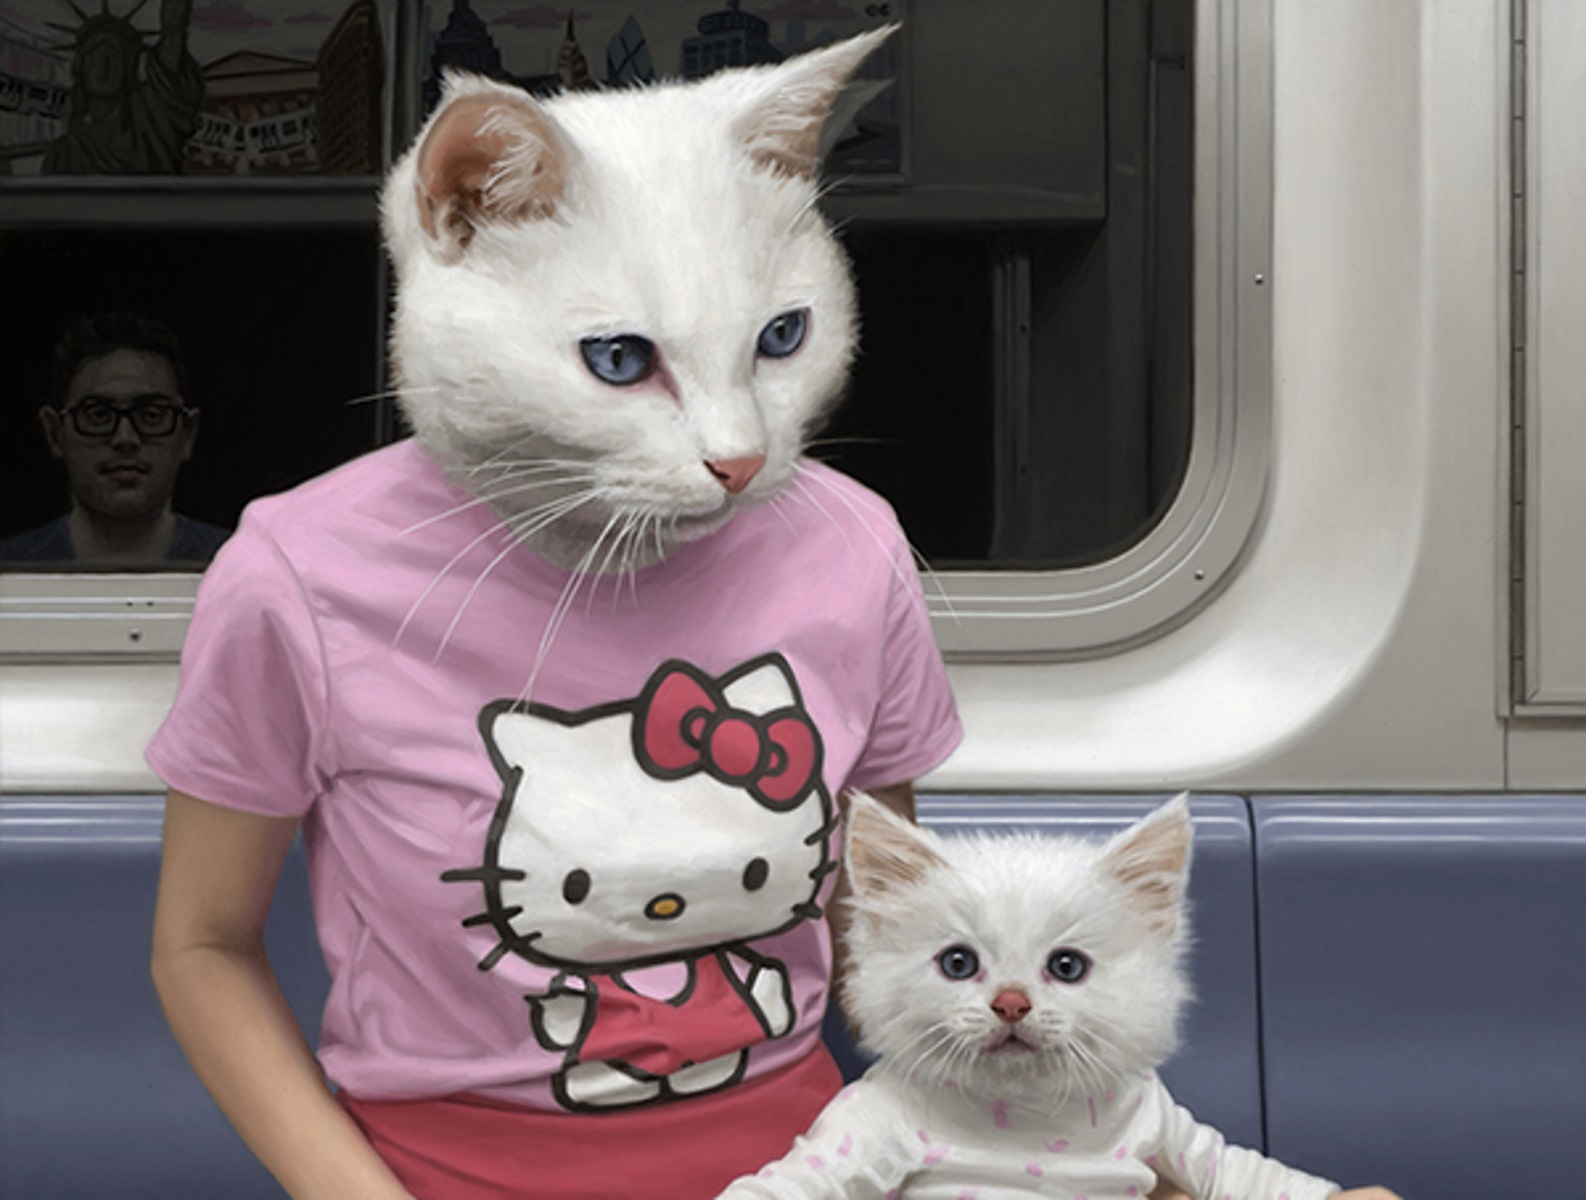 Το μετρό της Νέας Υόρκης γέμισε με… ανθρωπόμορφα ζώα! [Pics]